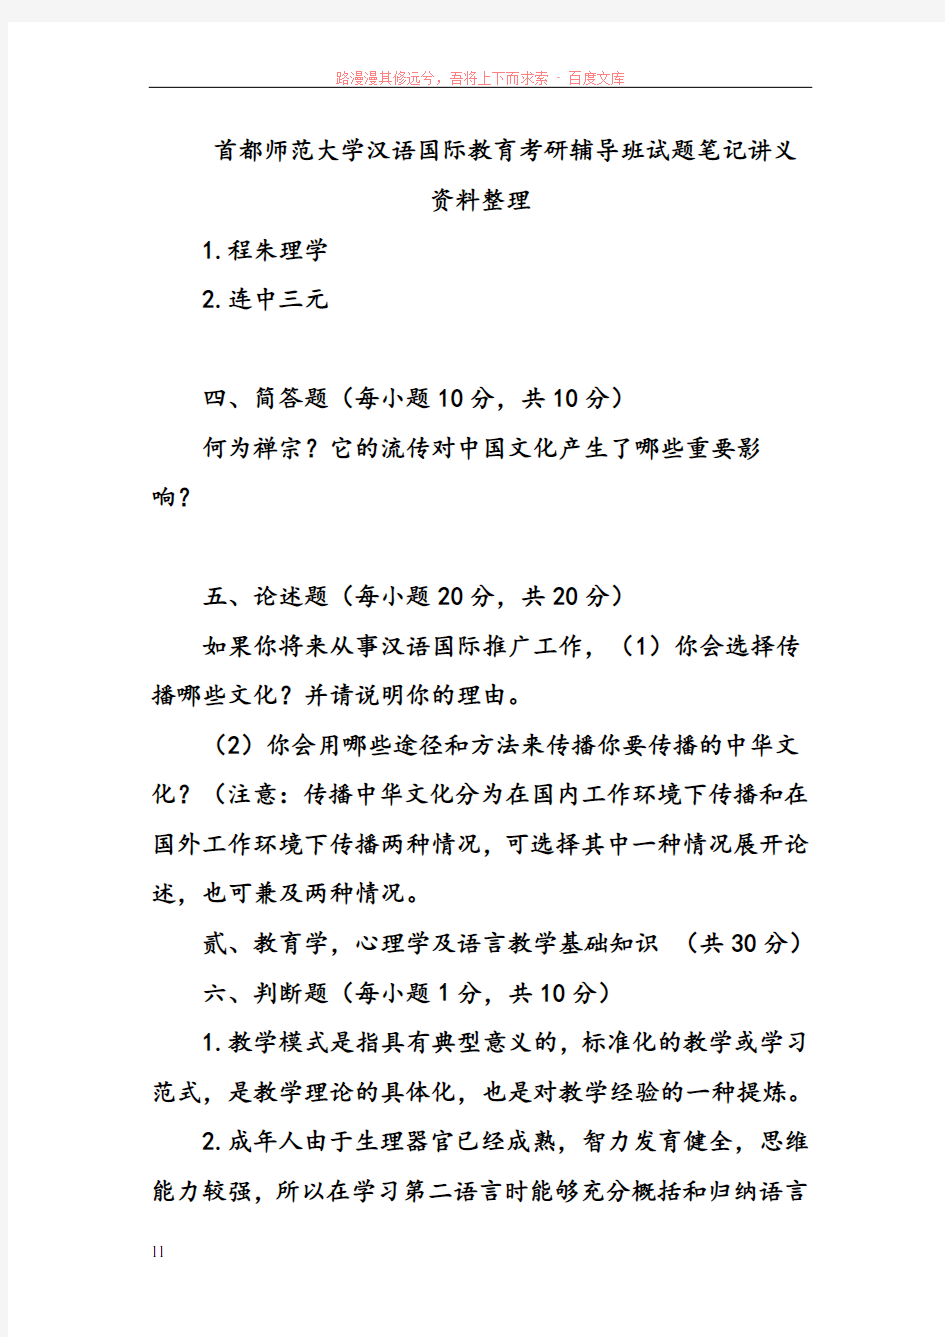 首都师范大学汉语国际教育考研辅导班试题笔记讲义资料整理